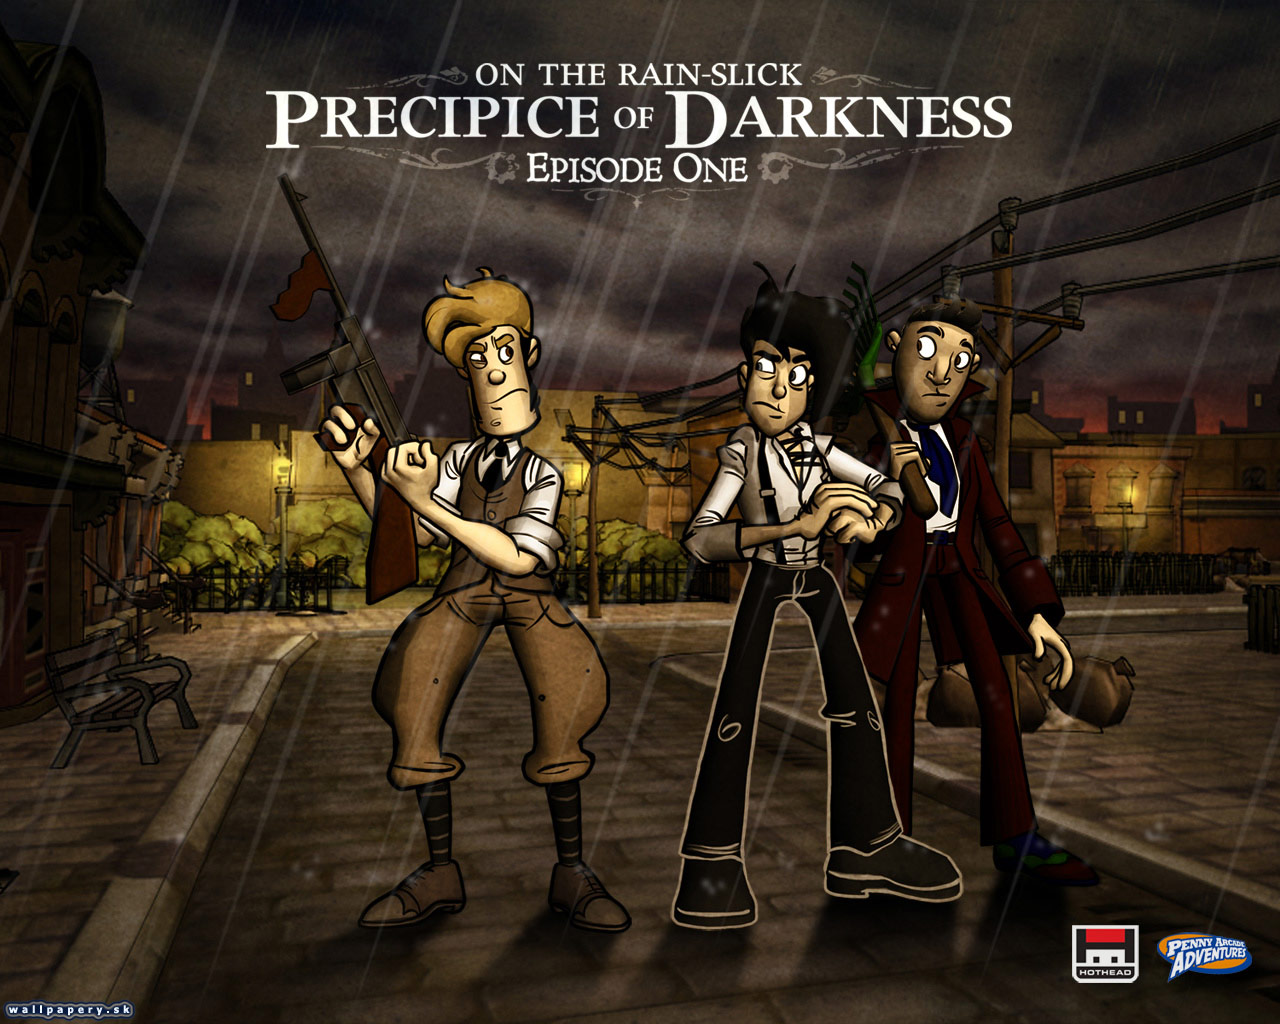 On The Rain-Slick: Precipice of Darkness - Episode One - wallpaper 3